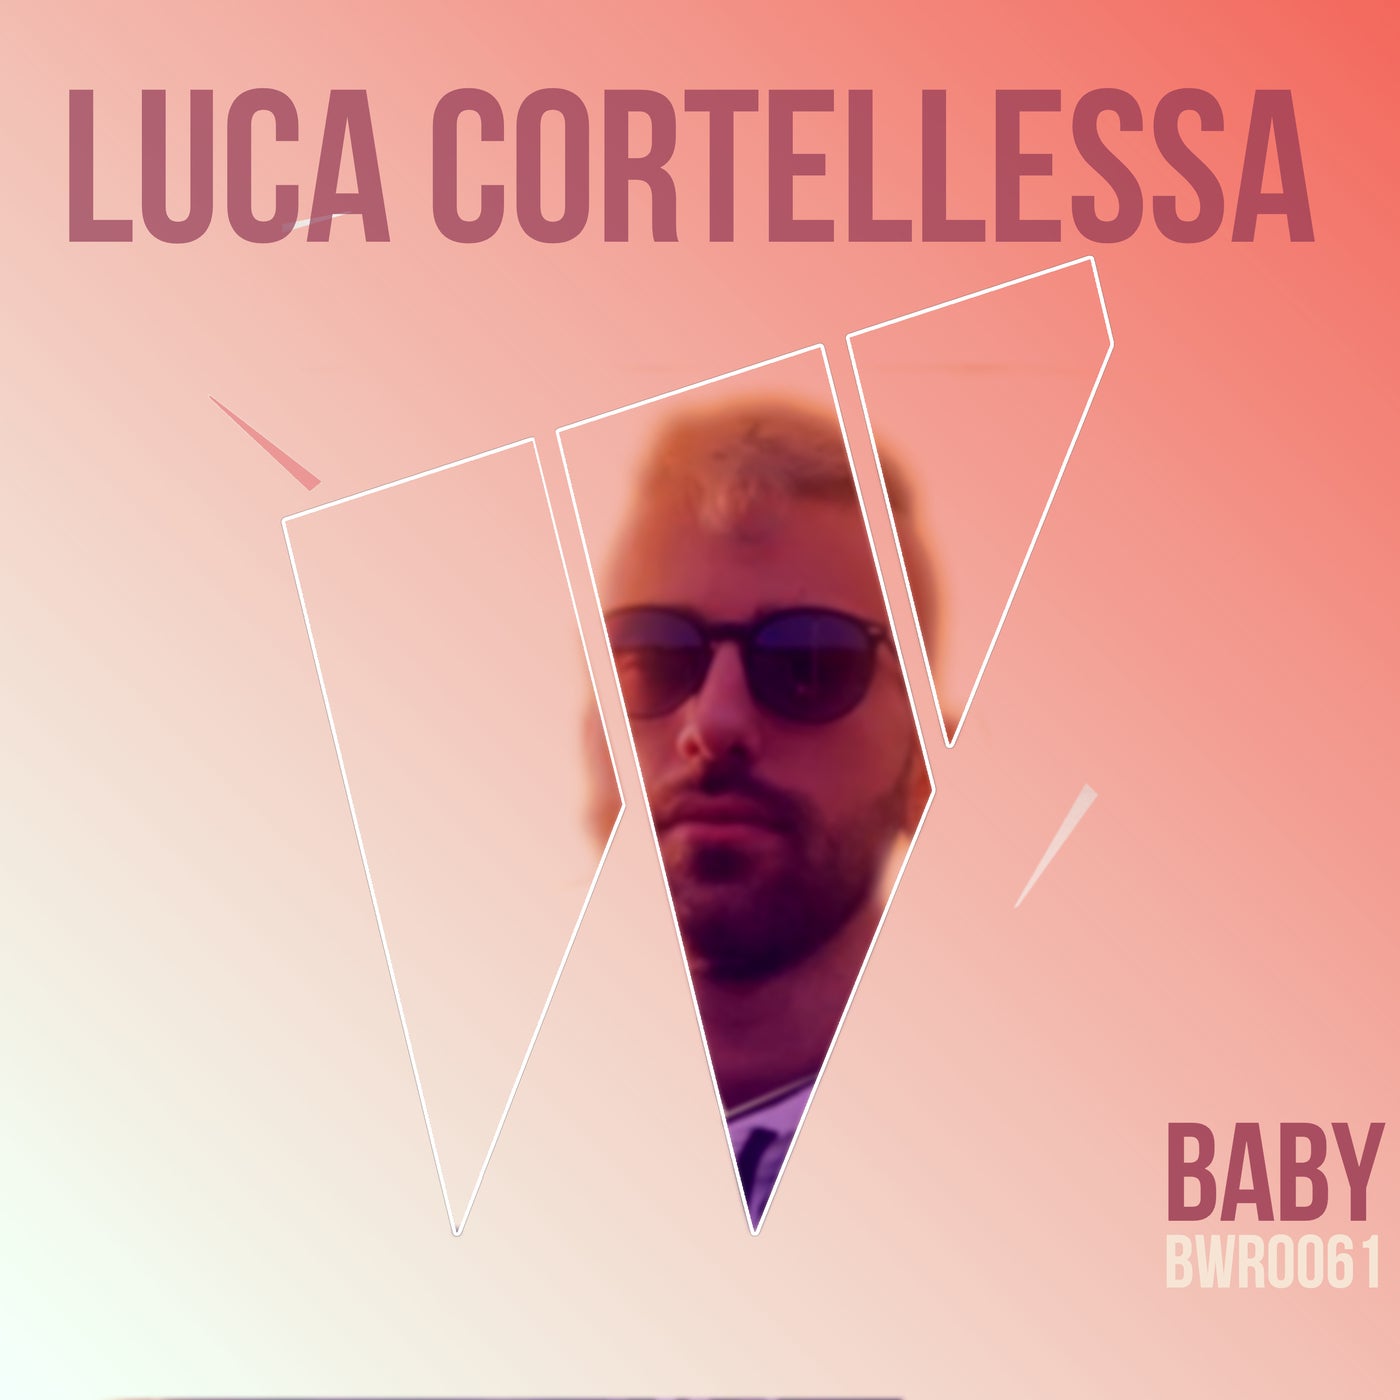 Luca Cortellessa - Baby (Original Mix)